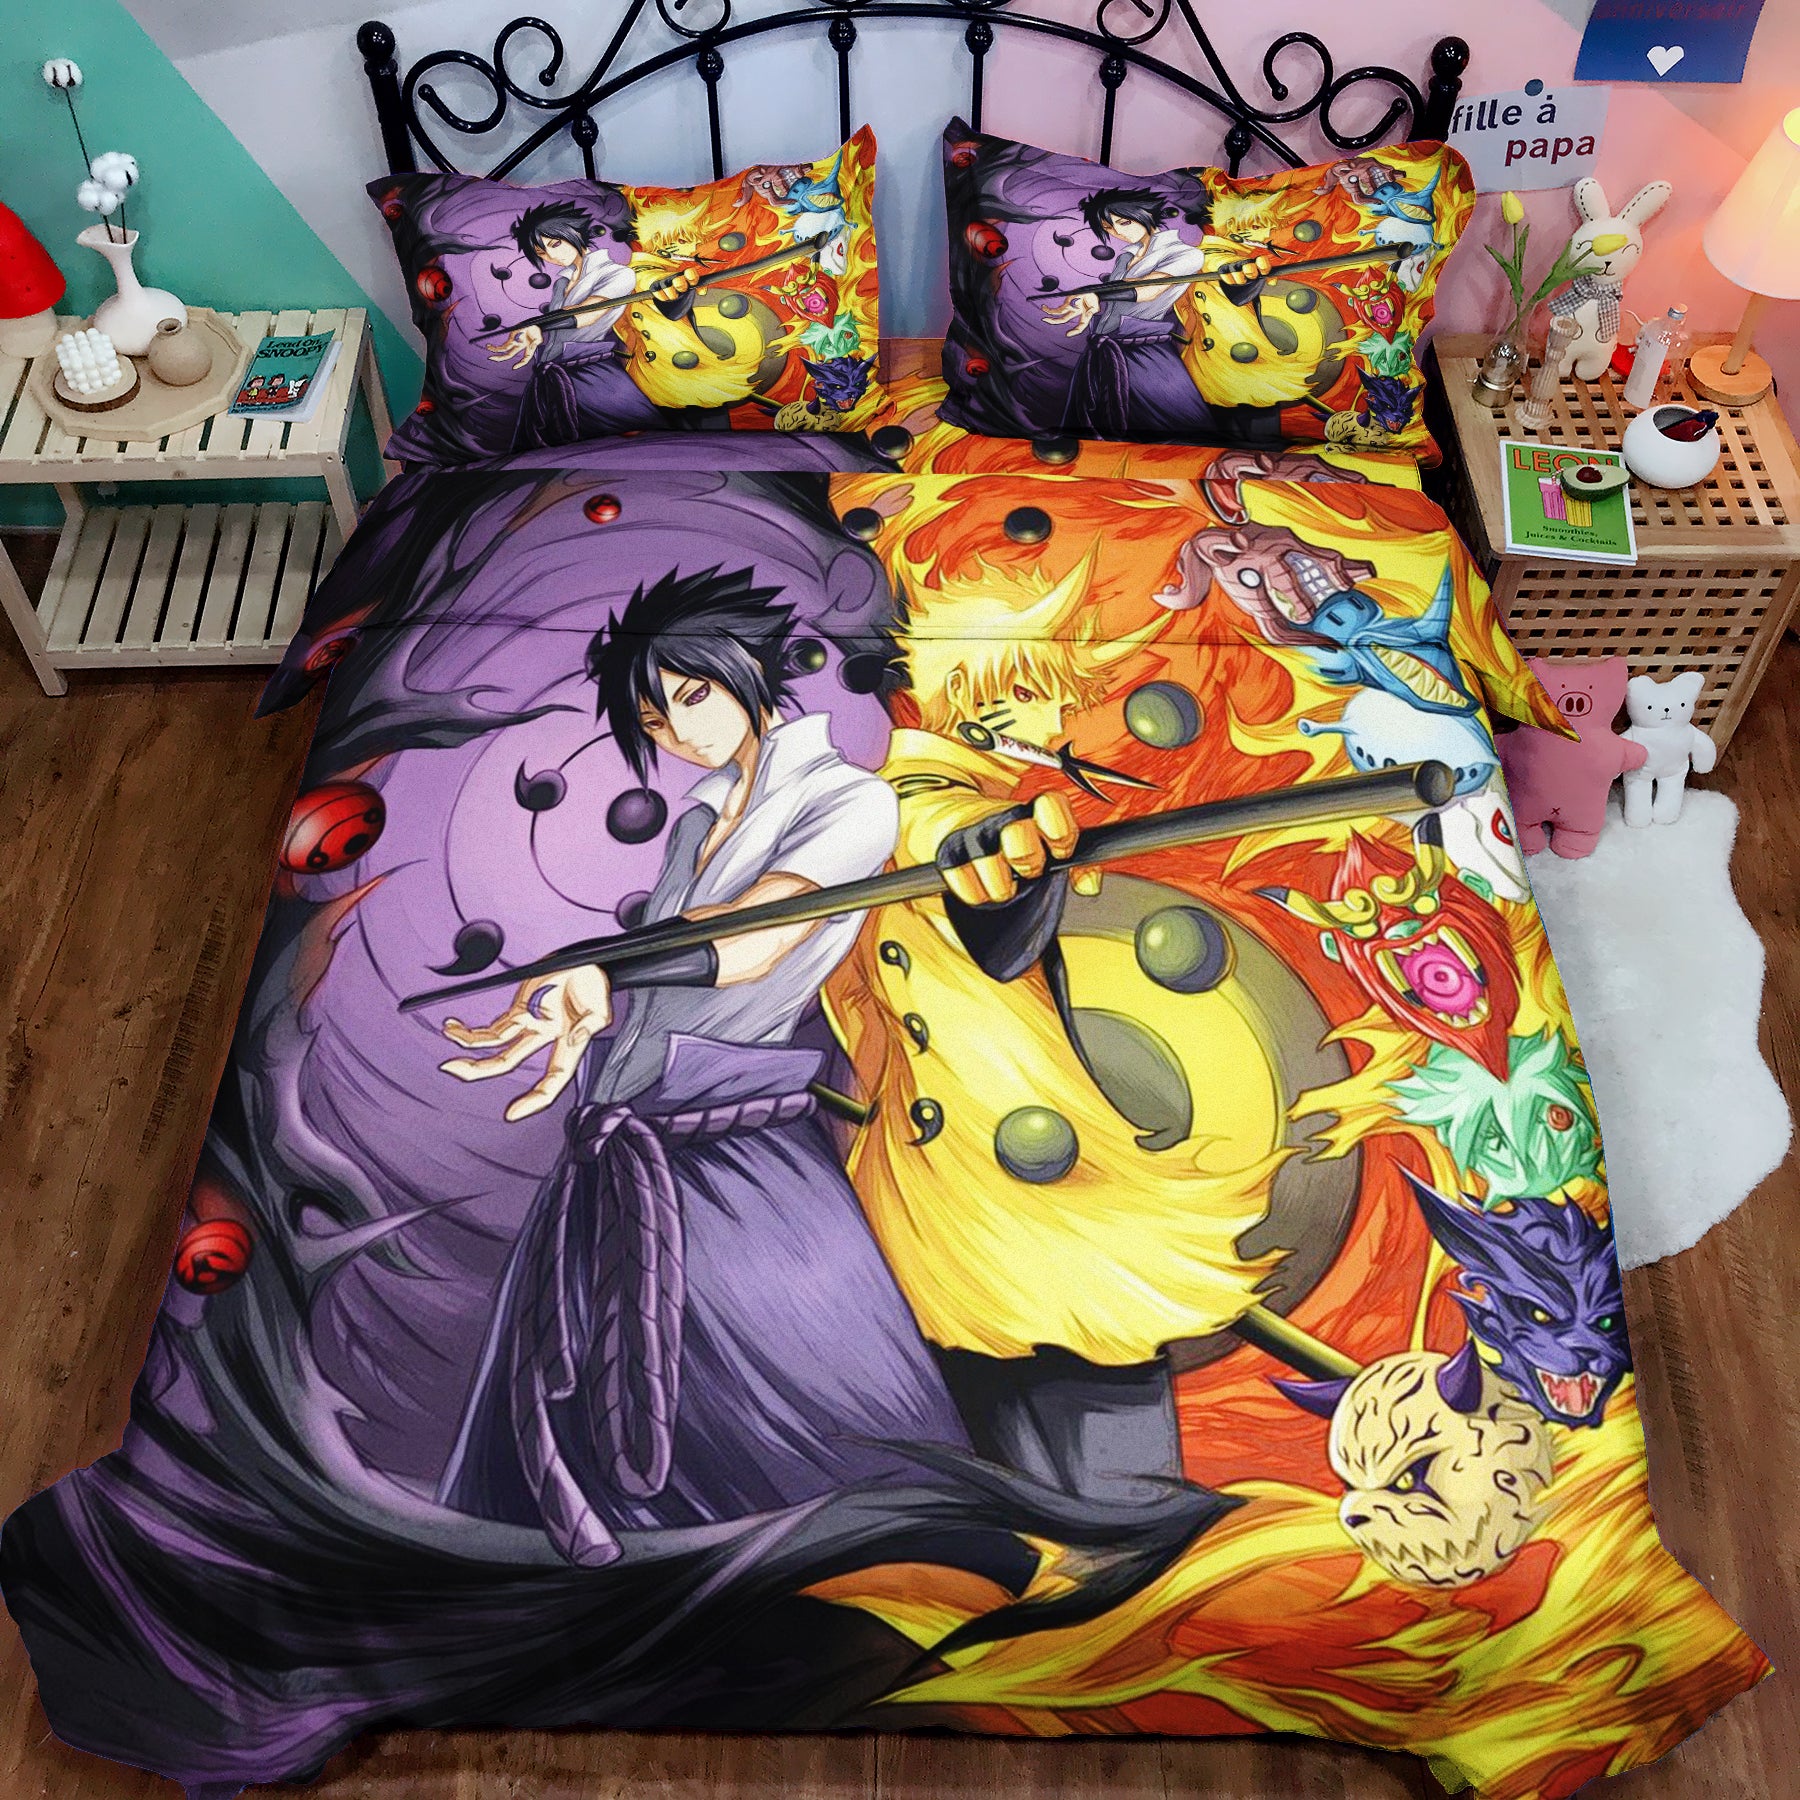 Naruto vs Sasuke Bedding Set Duvet Cover And 2 Pillowcases